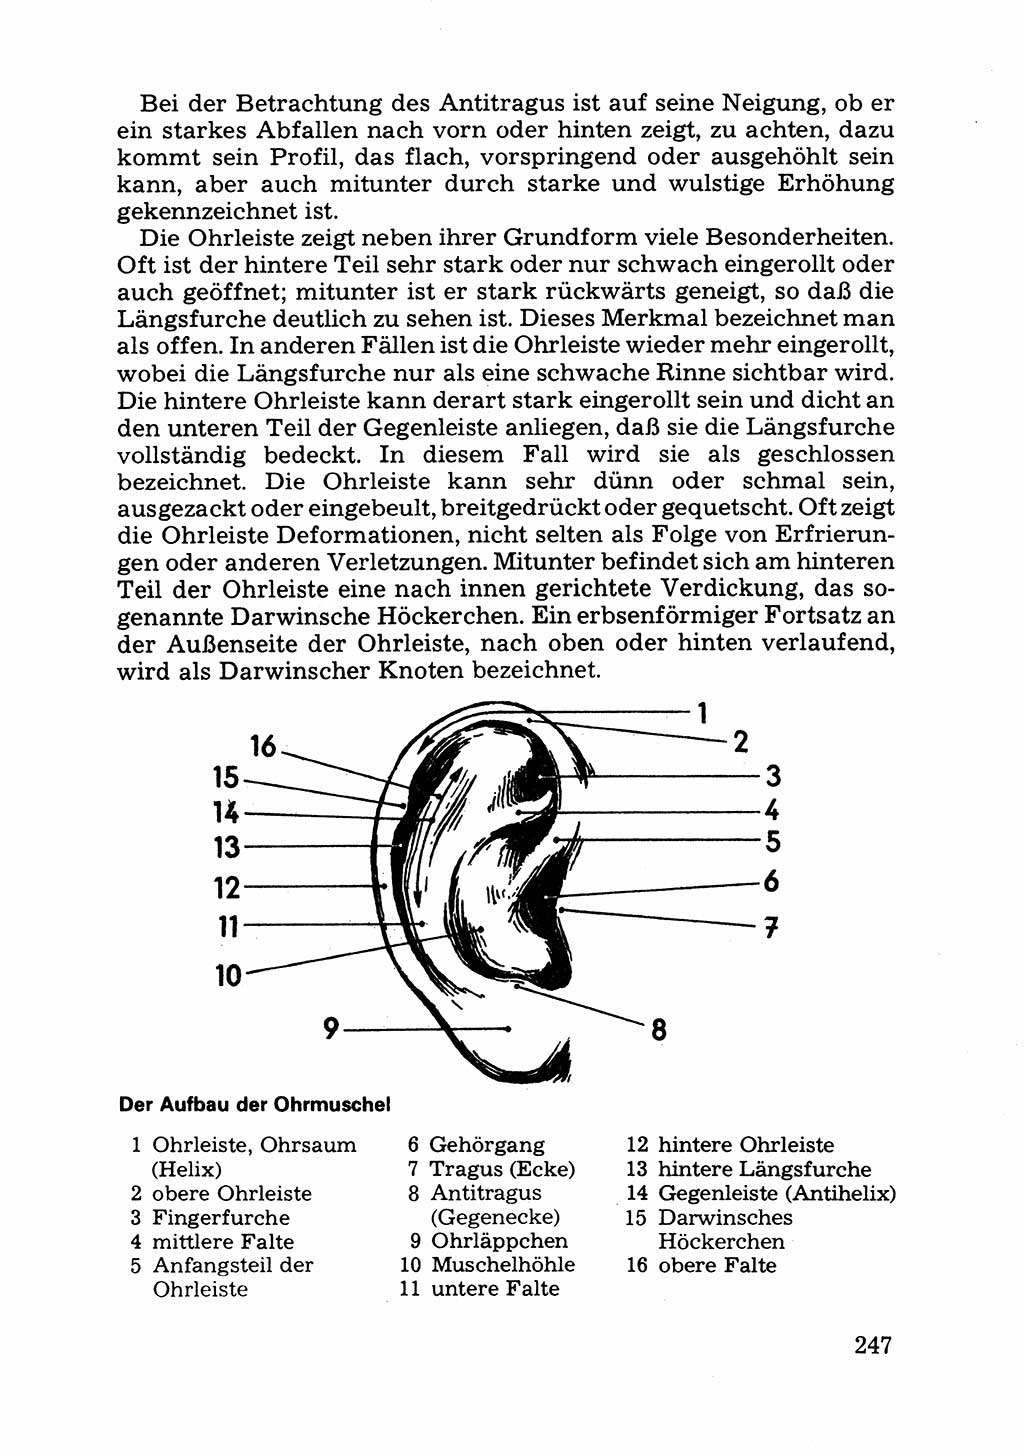 Das subjektive Porträt [Deutsche Demokratische Republik (DDR)] 1981, Seite 247 (Subj. Port. DDR 1981, S. 247)